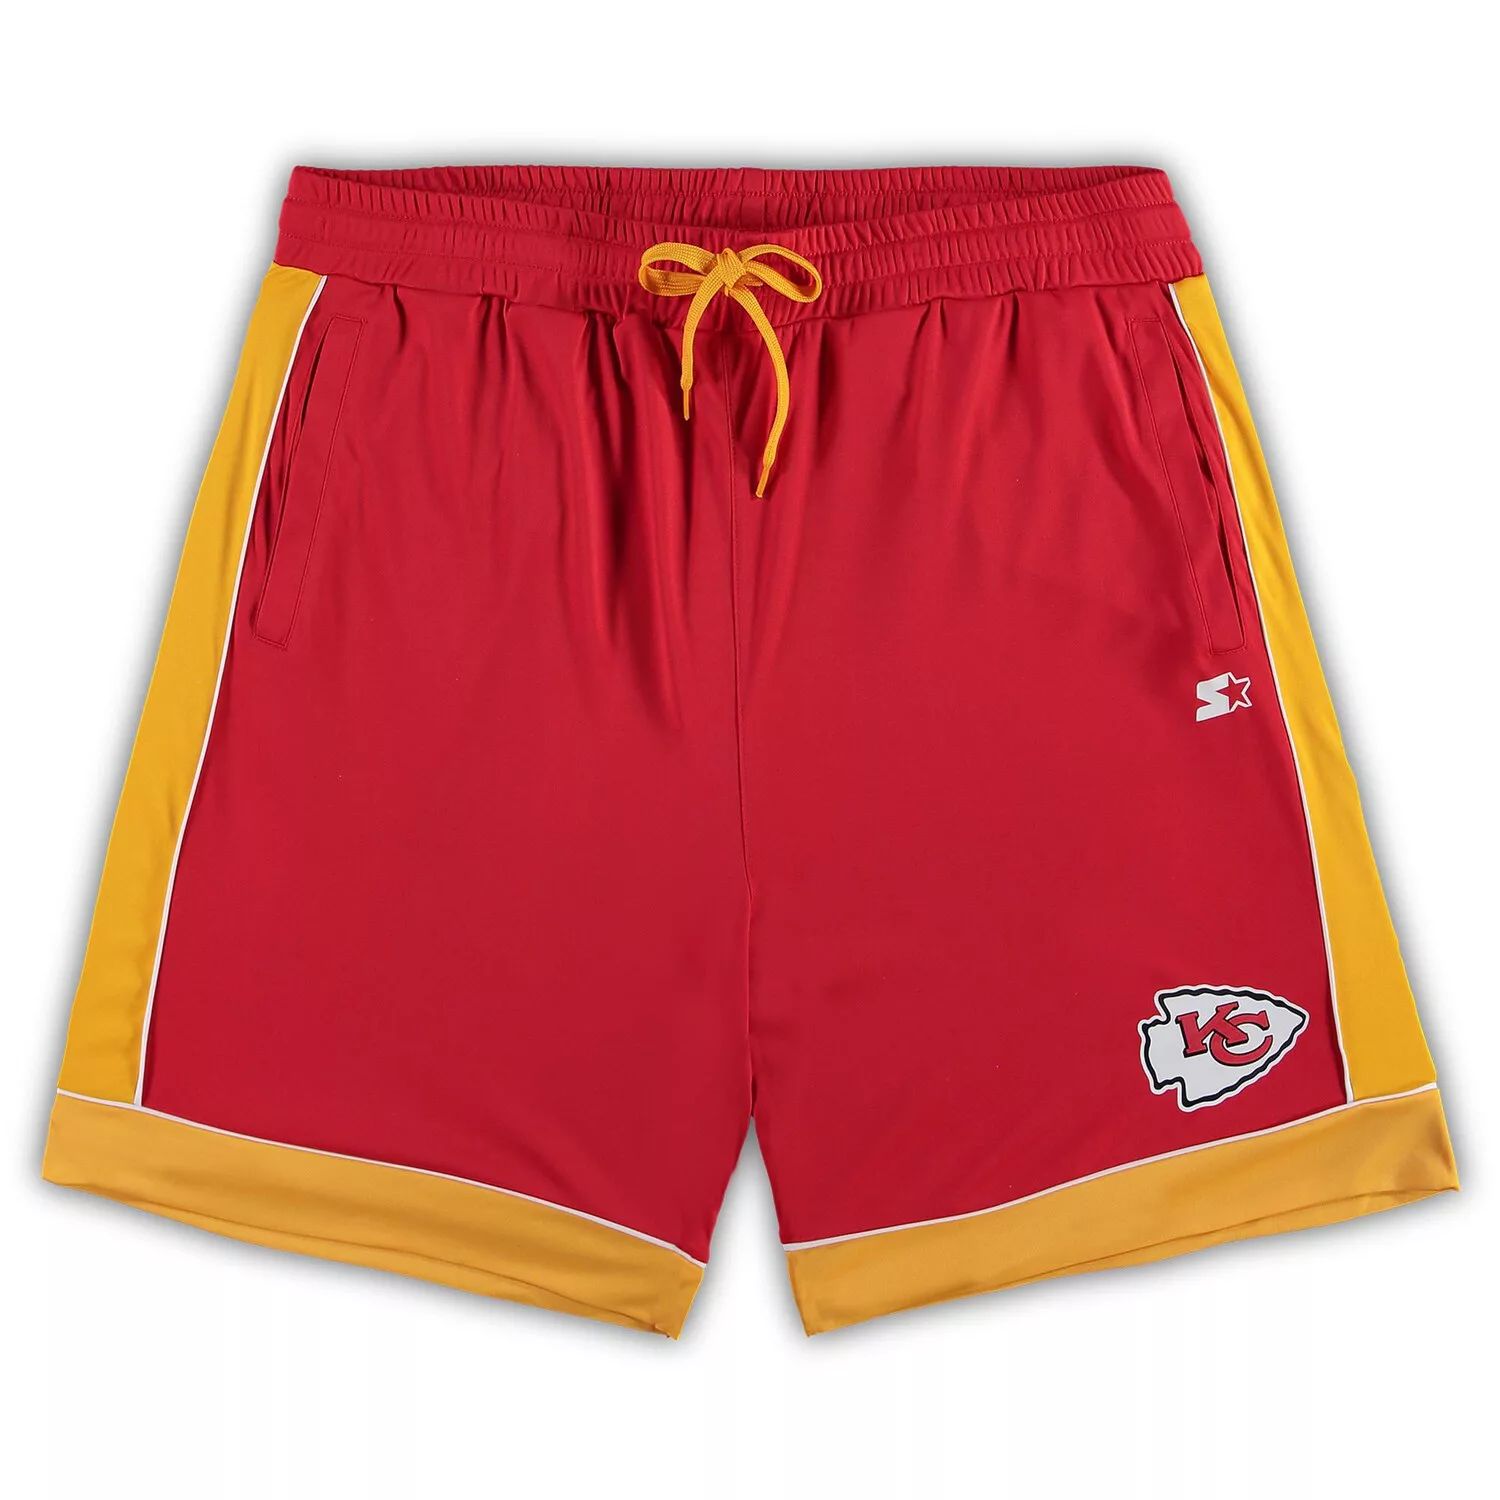 цена Мужские красные/золотые модные шорты, любимые поклонниками команды Kansas City Chiefs Starter